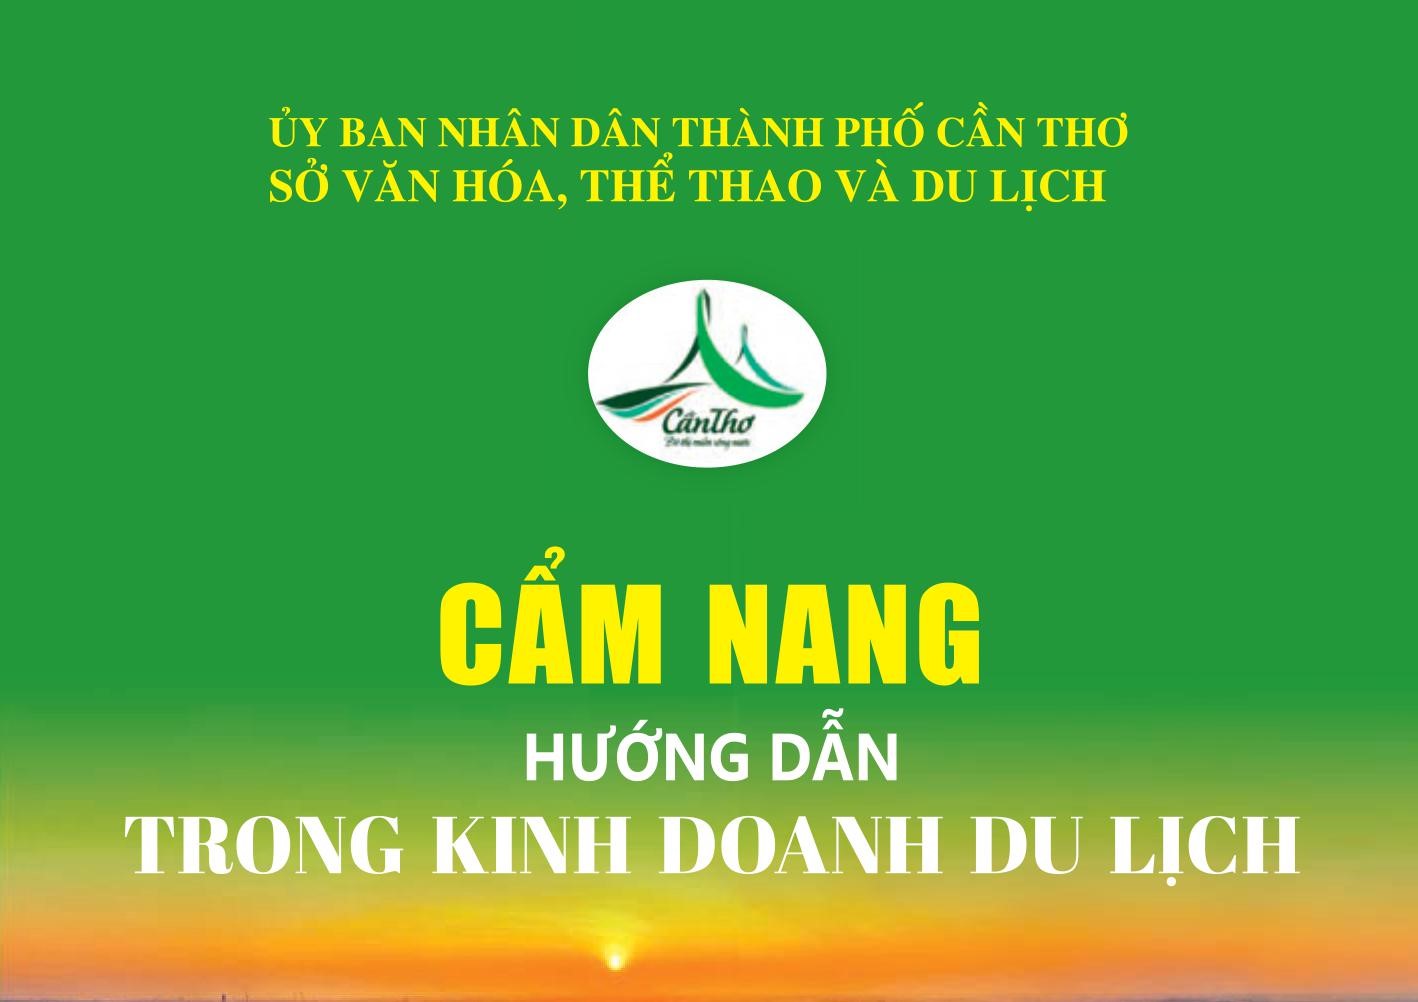 Cẩm Nang hướng dẫn trong kinh doanh du lịch